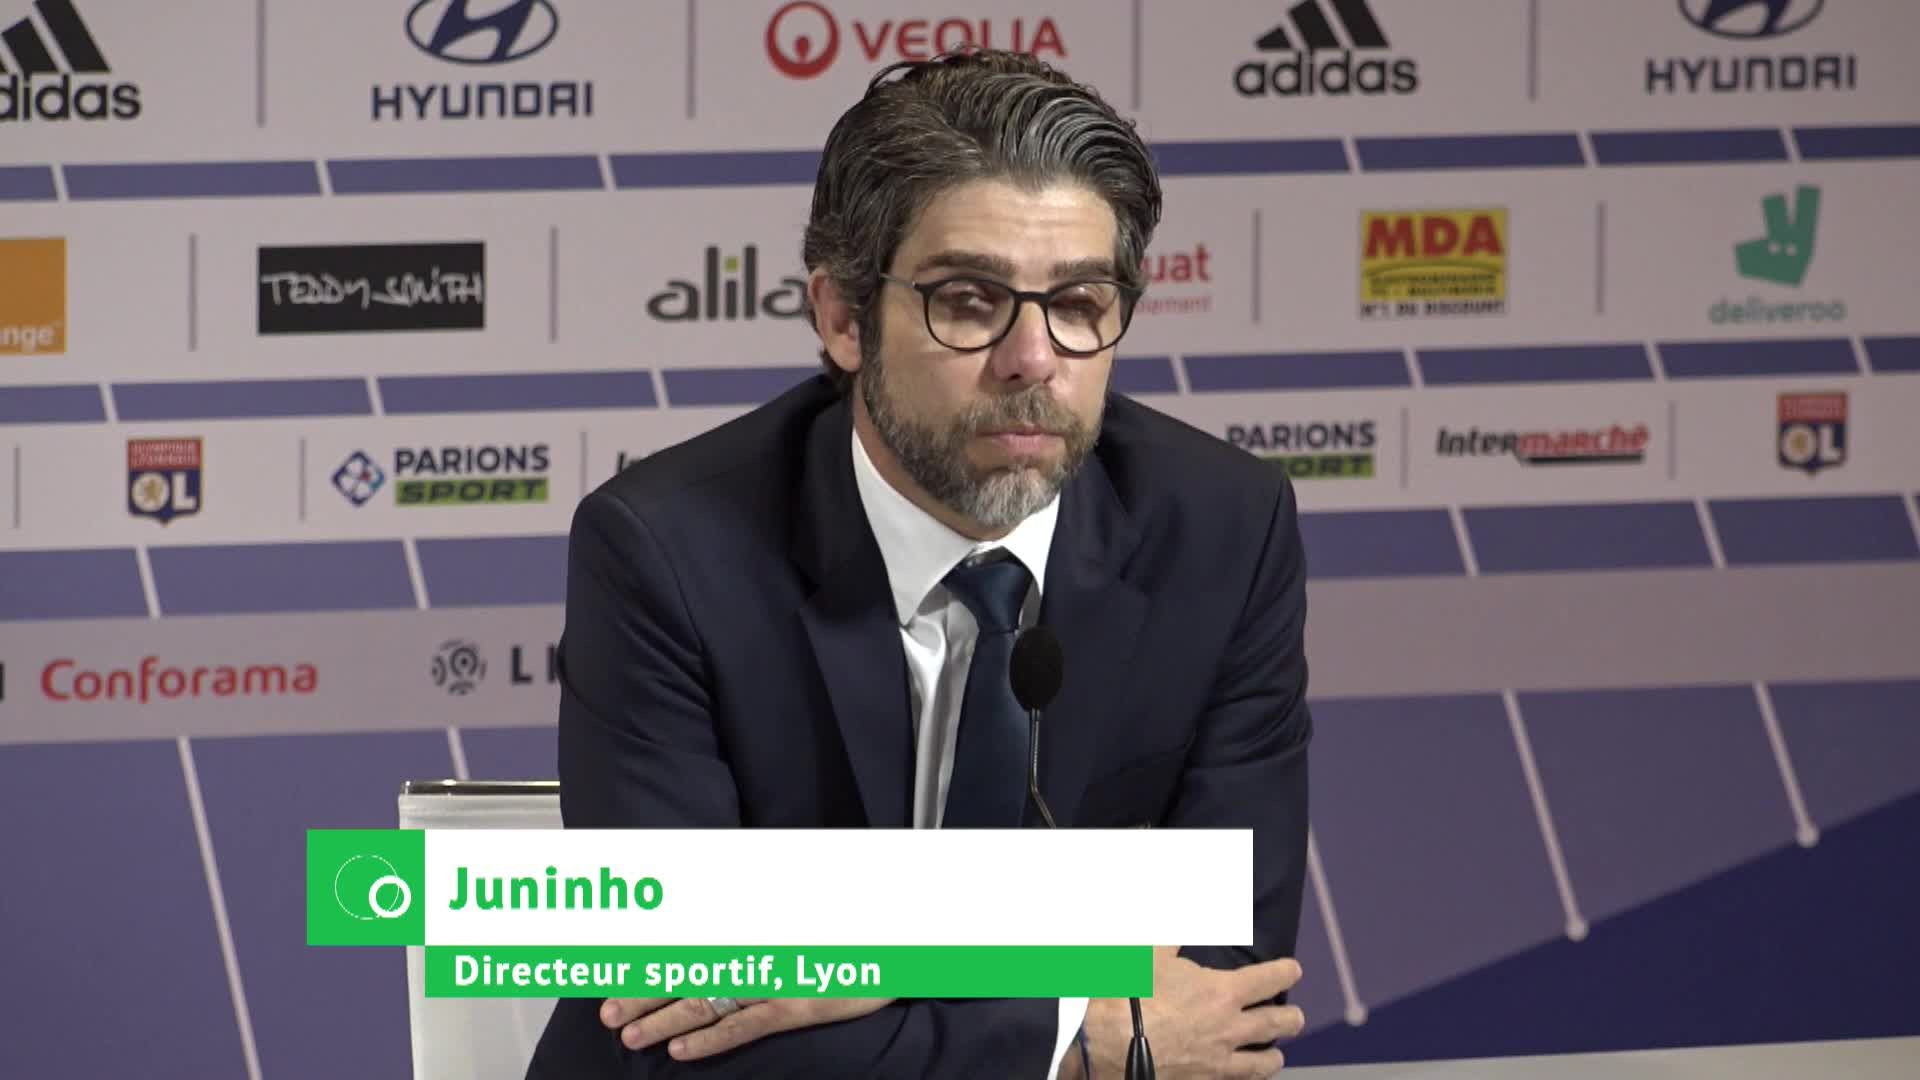 OL Mercato : Juninho va quitter Lyon Foot.